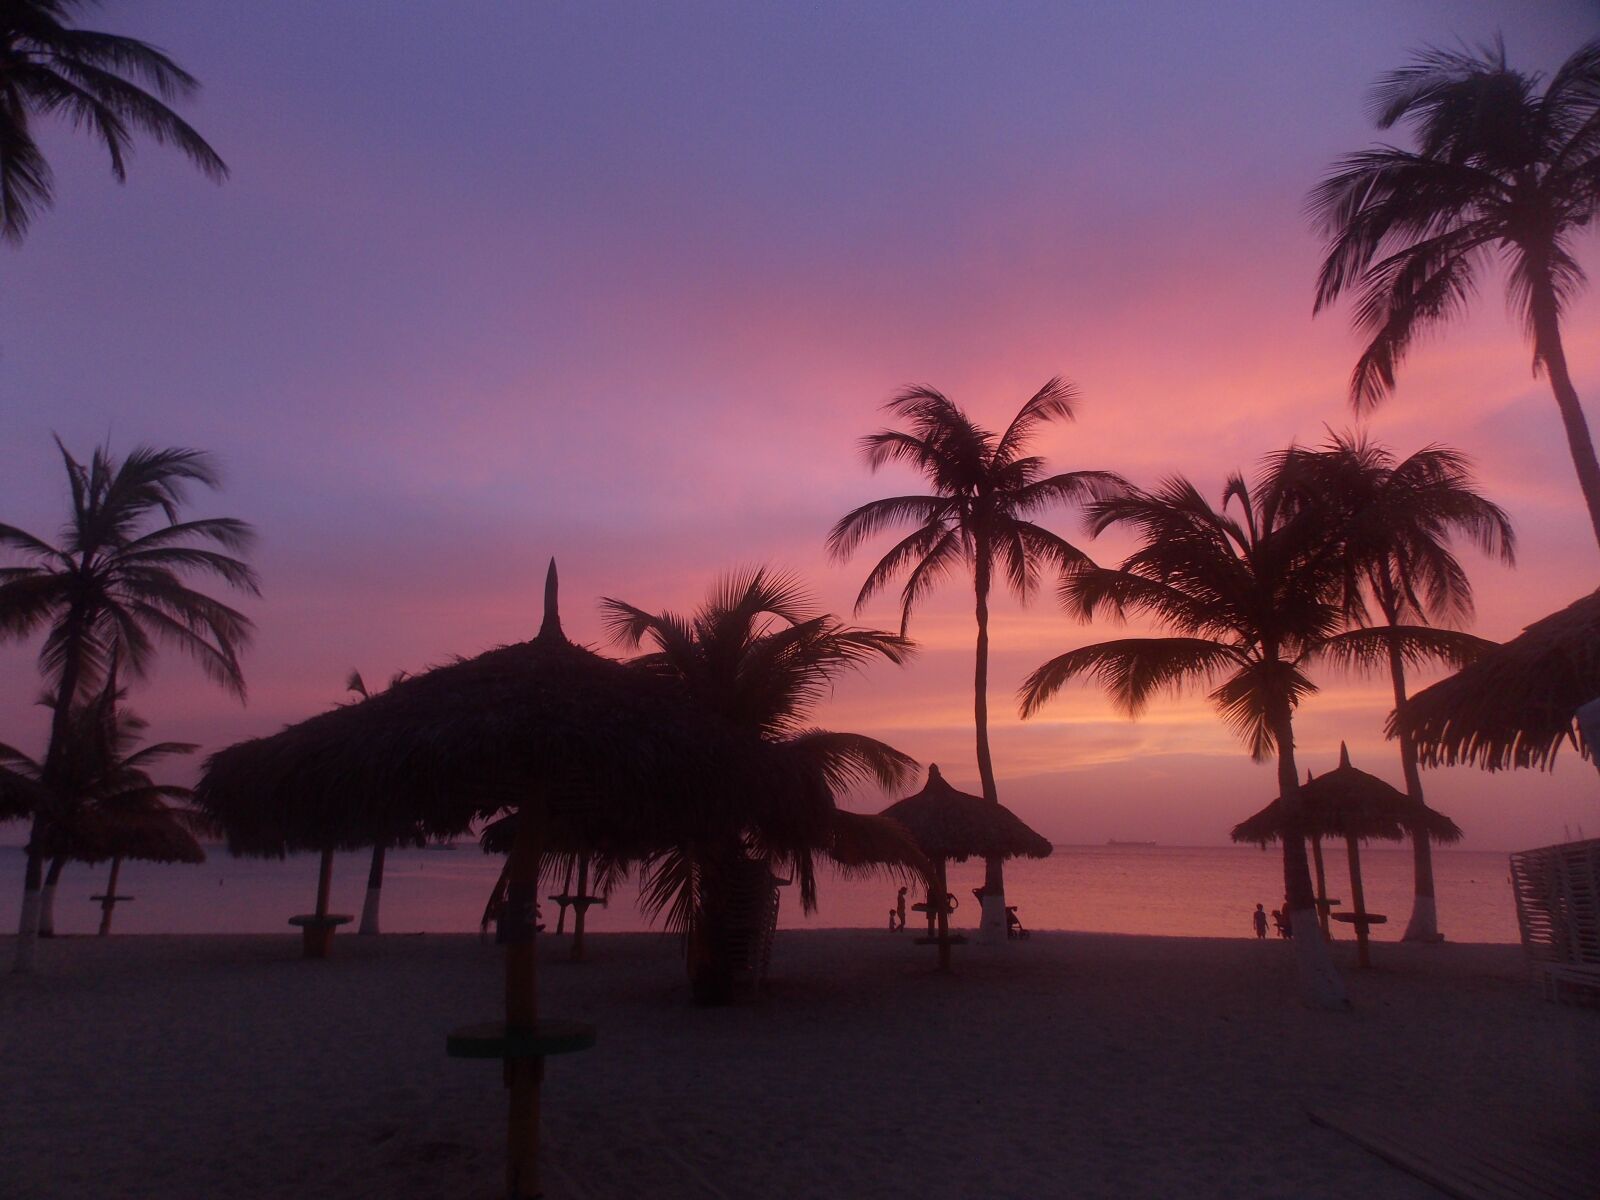 Nikon Coolpix L810 sample photo. Palms, aruba, dawn photography